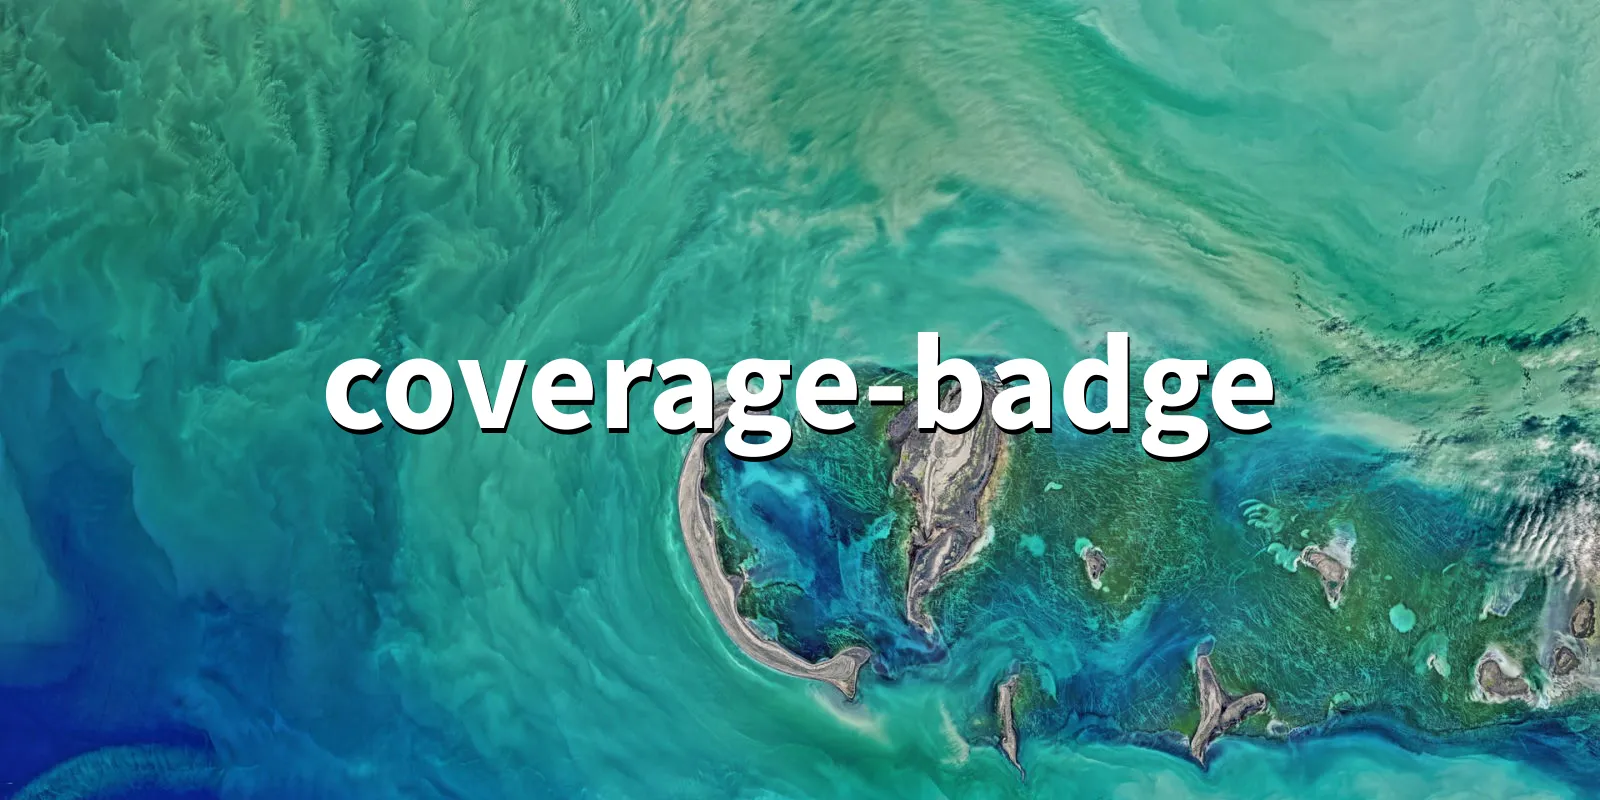 /pkg/c/coverage-badge/coverage-badge-banner.webp